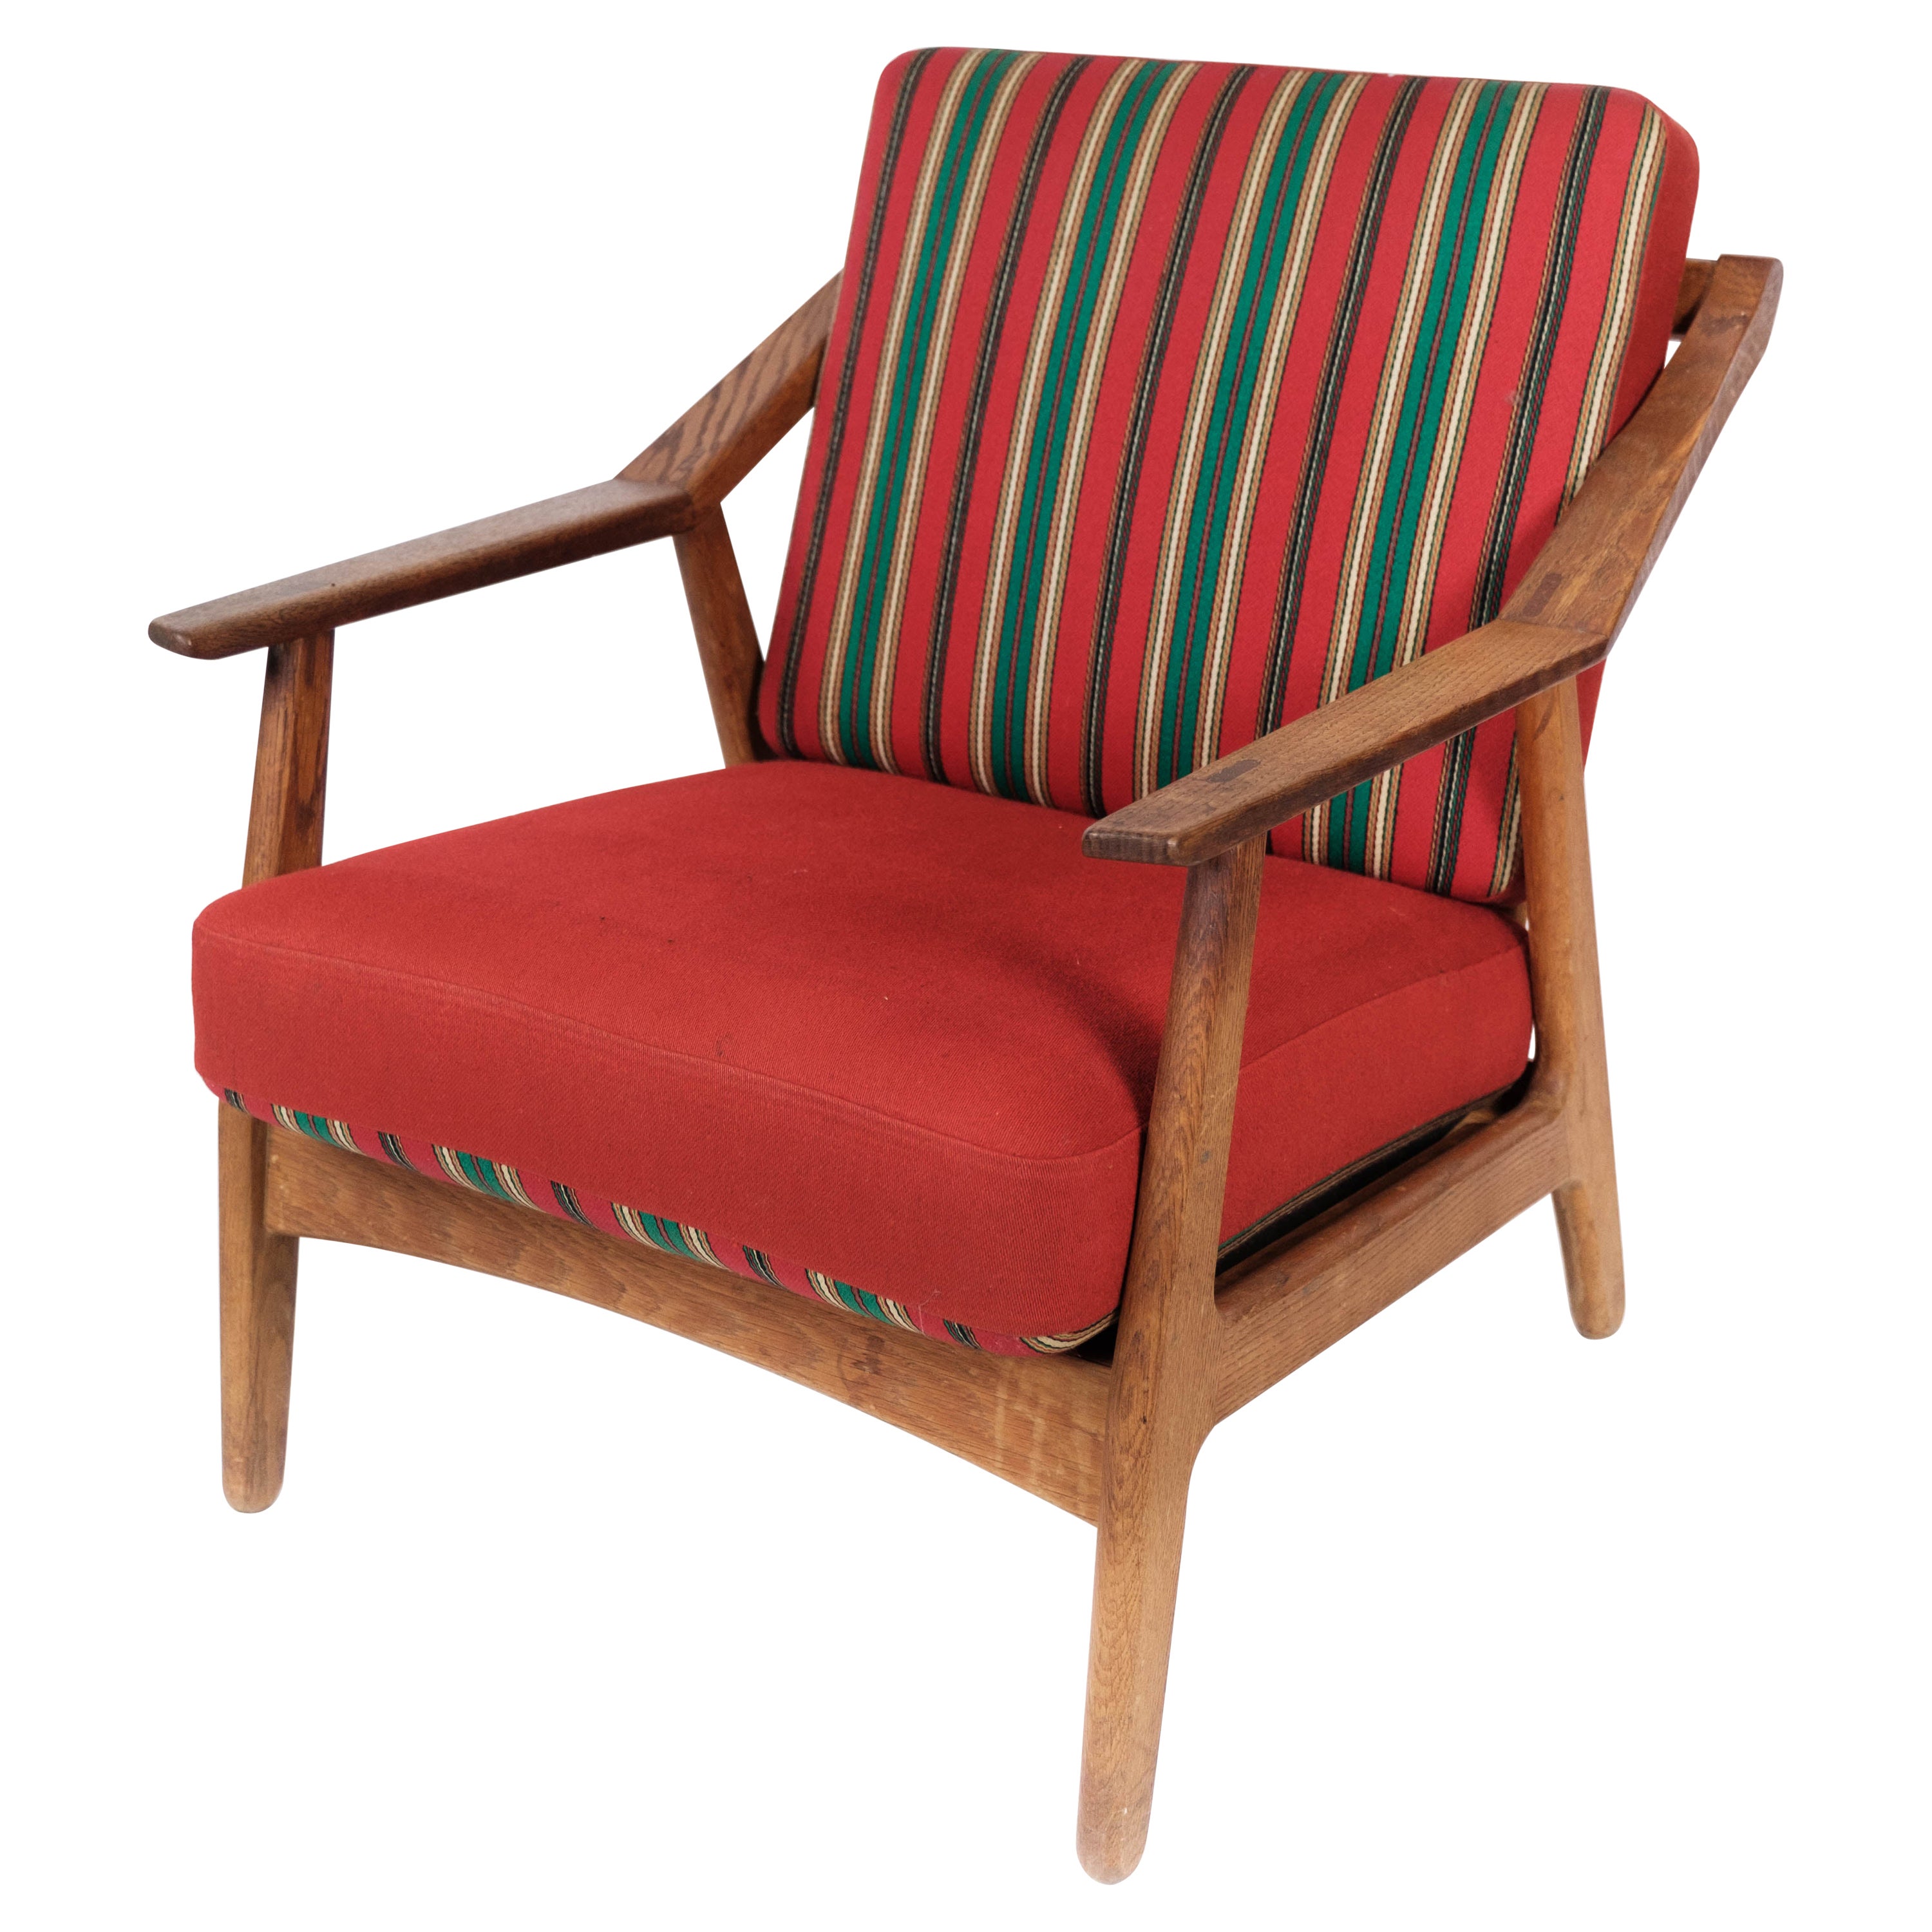 Sessel aus Eiche, gepolstert mit rotem Stoff, von H. Brockmann Petersen, 1960er Jahre